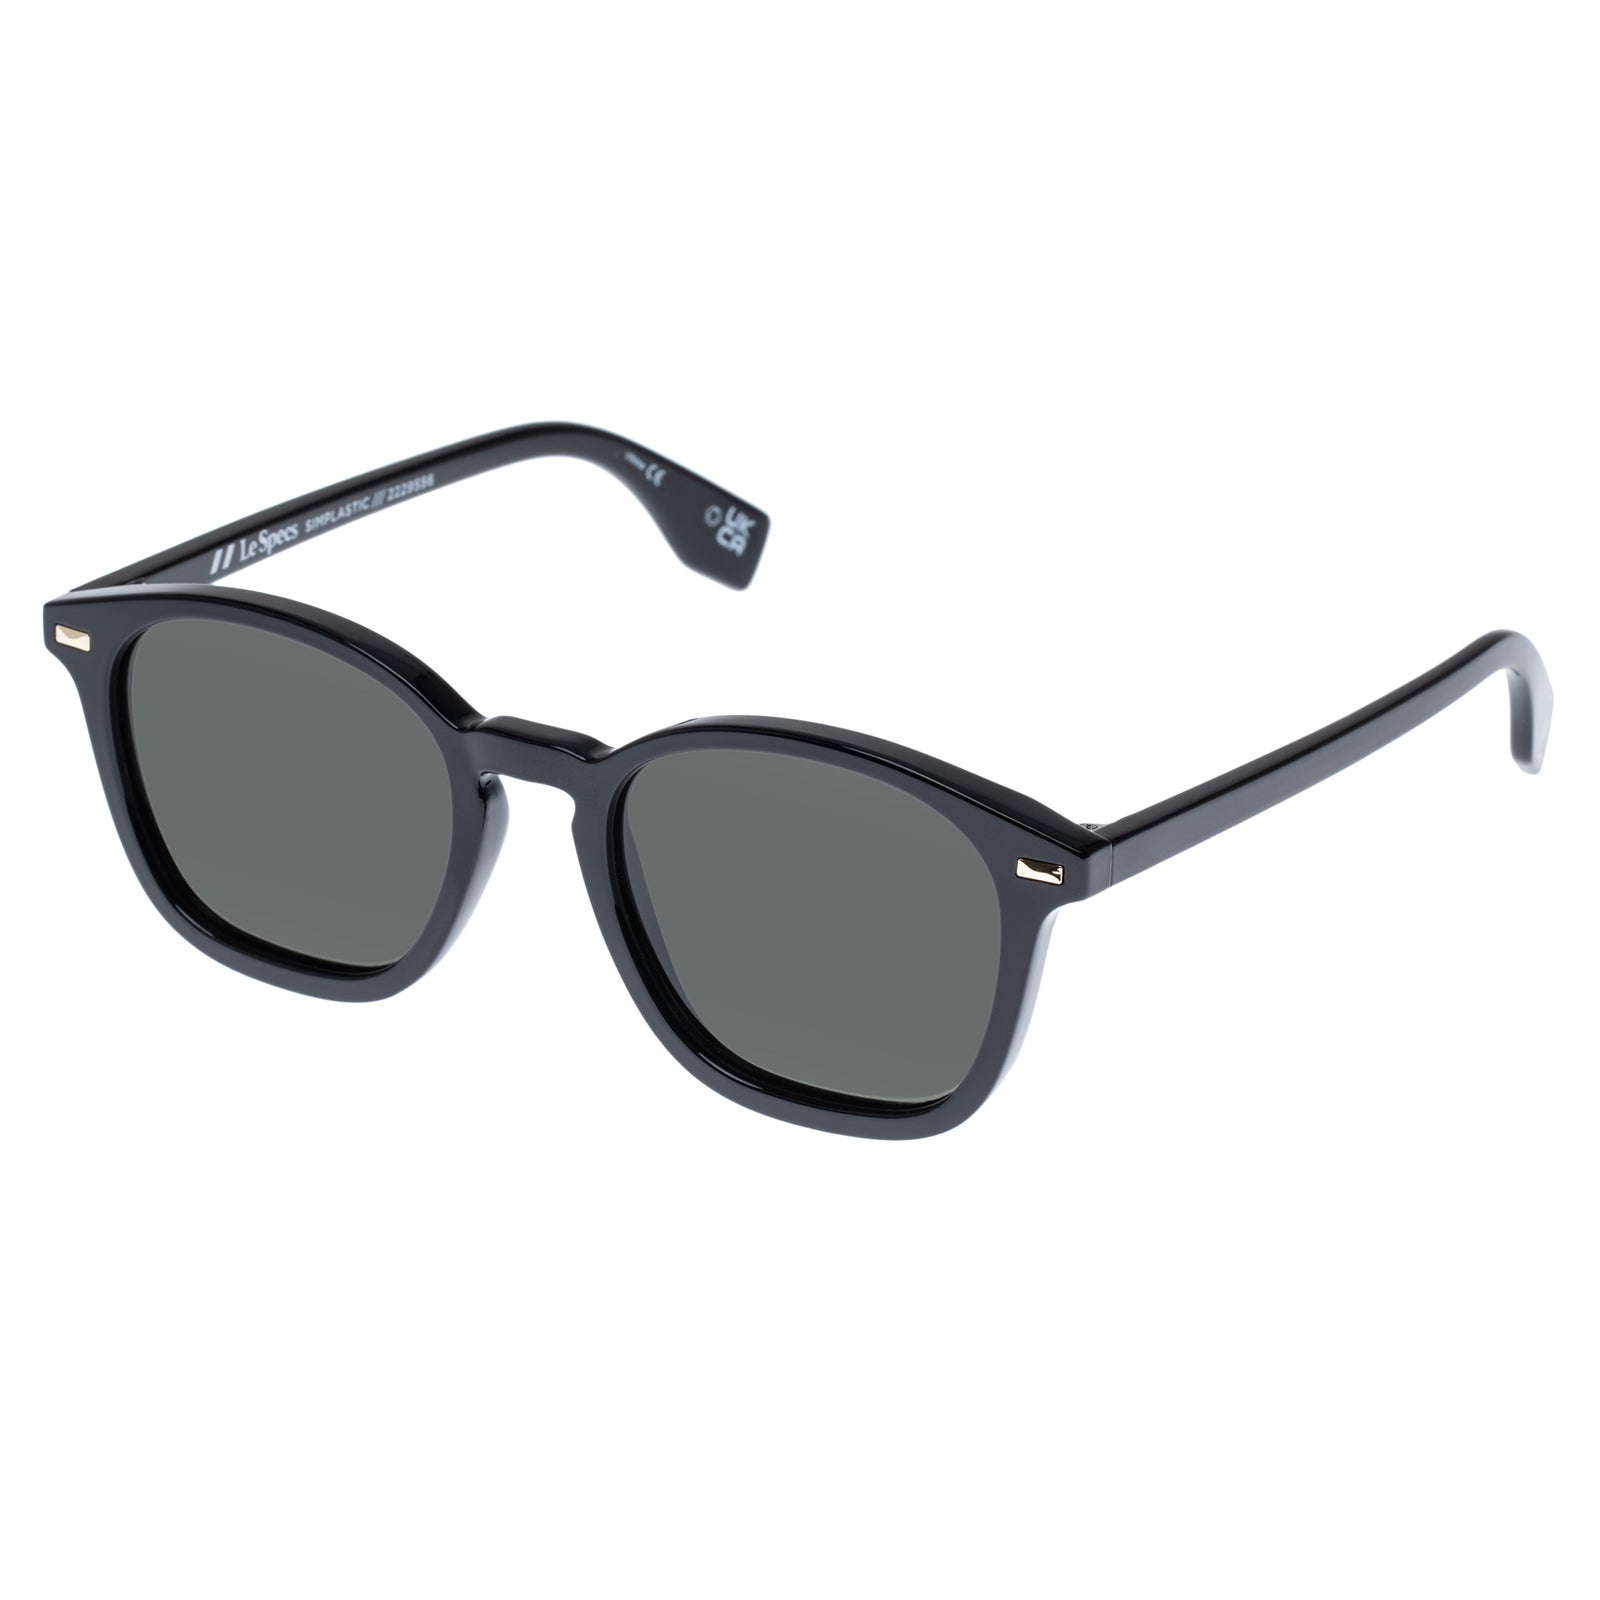 Simplastic Black Uni-Sex Square Sunglasses